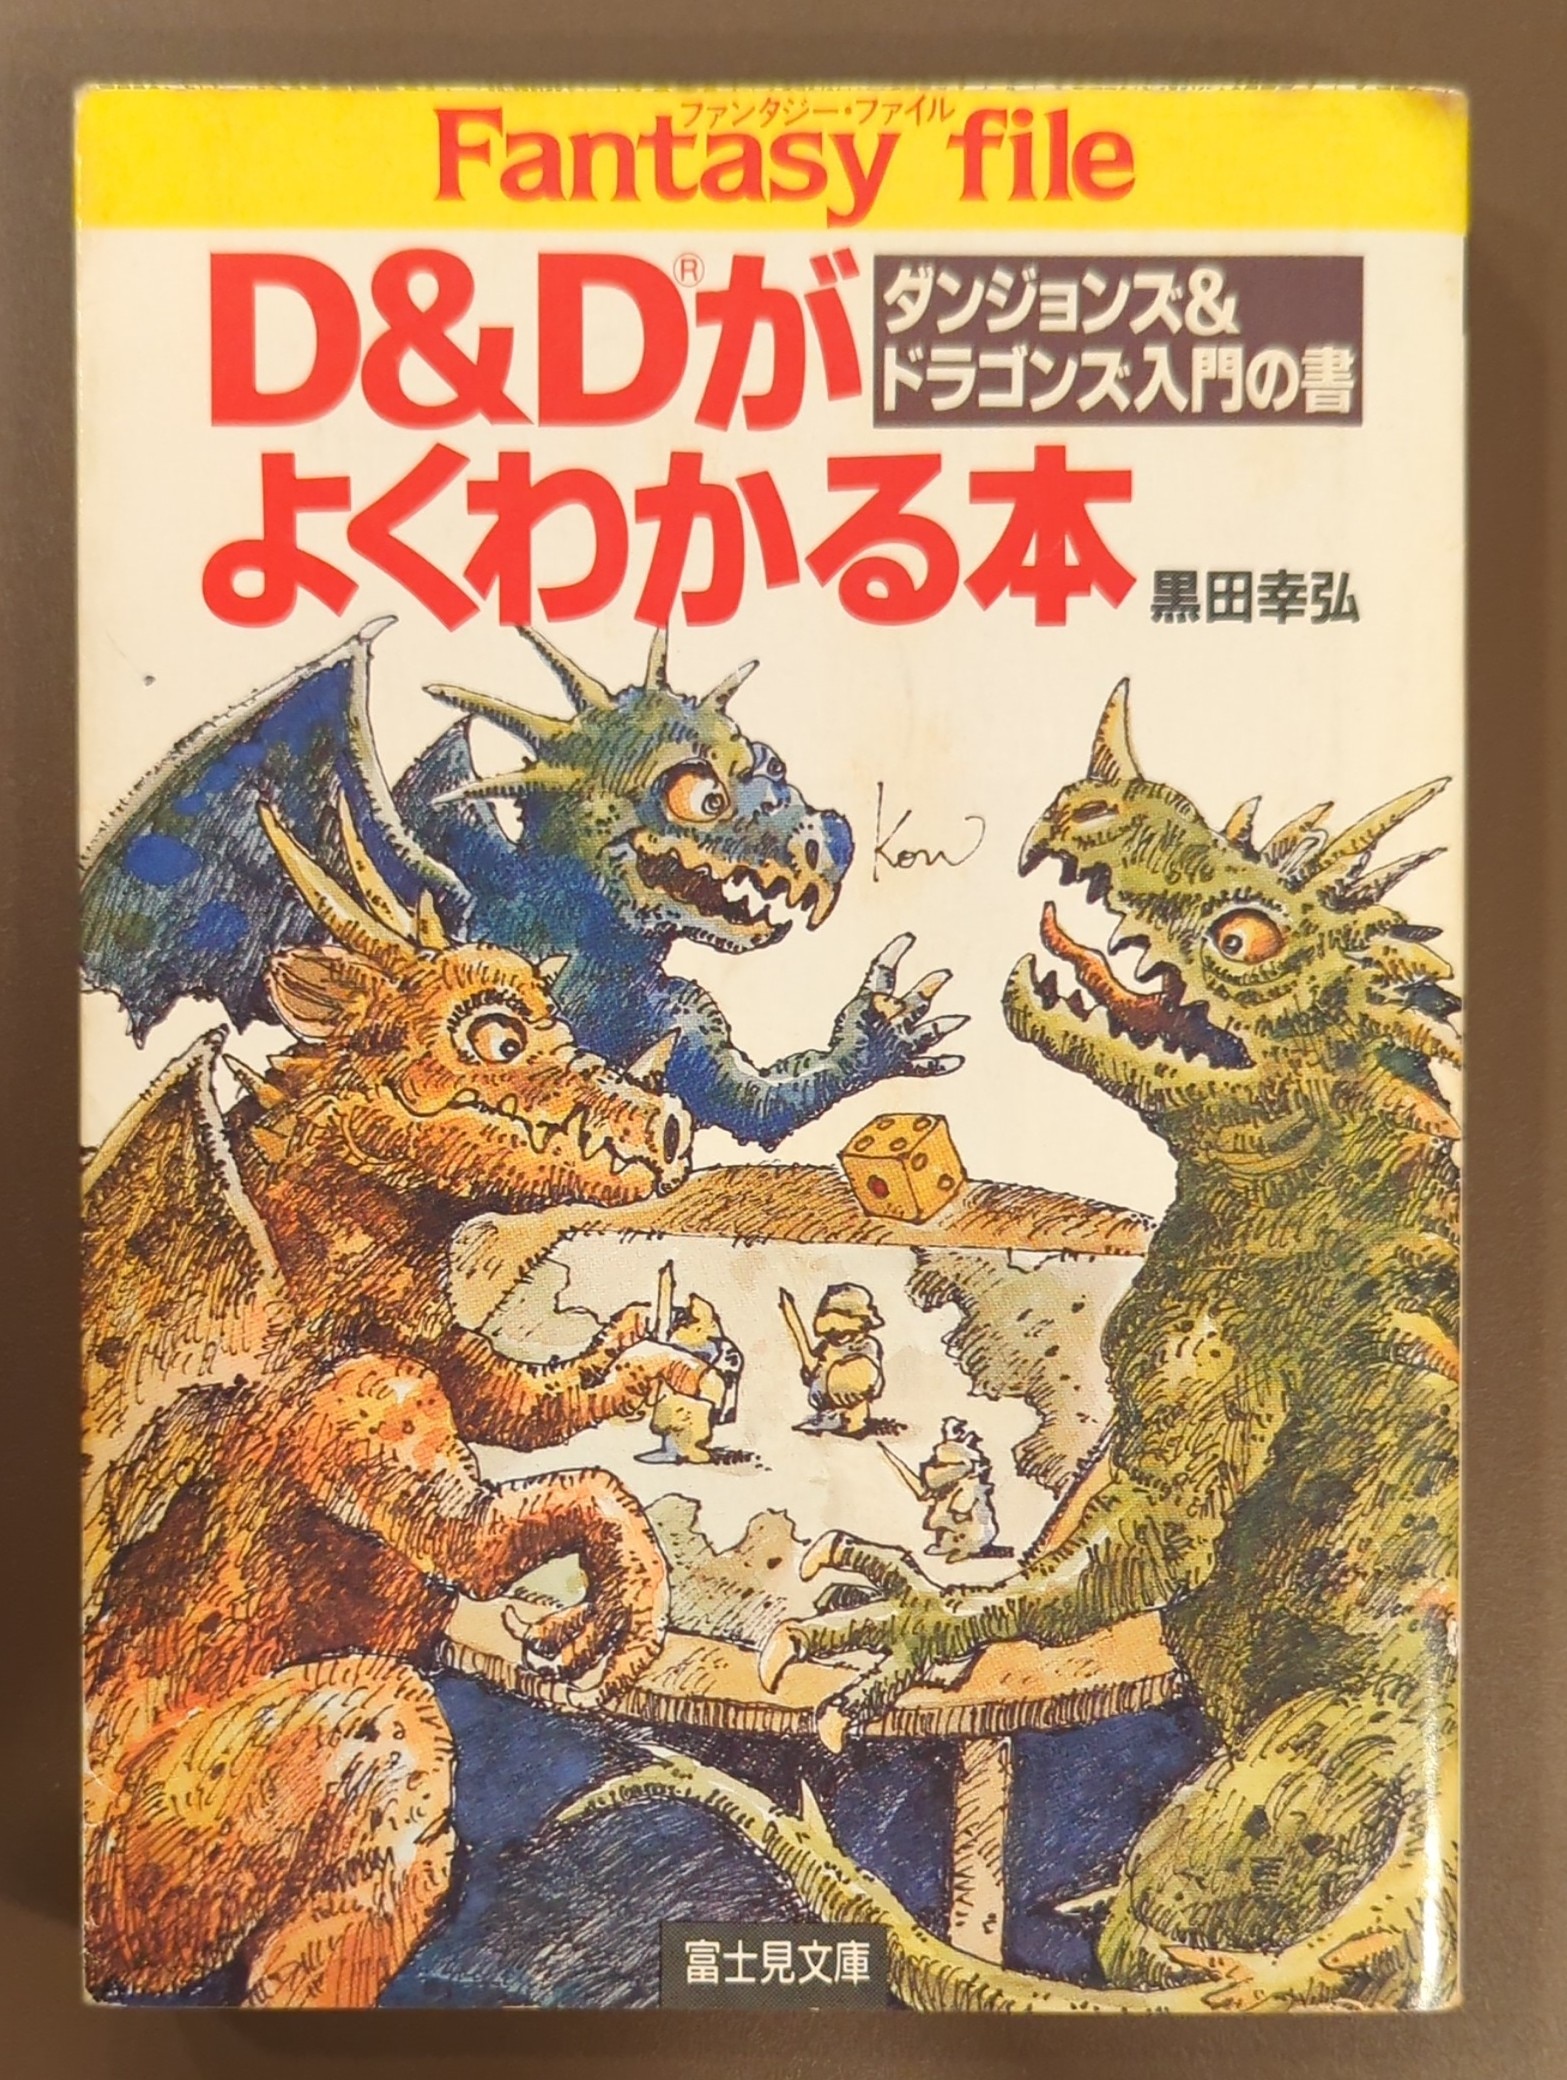 富士見書房 富士見ドラゴンブック 黒田幸弘 D&Dがよくわかる本